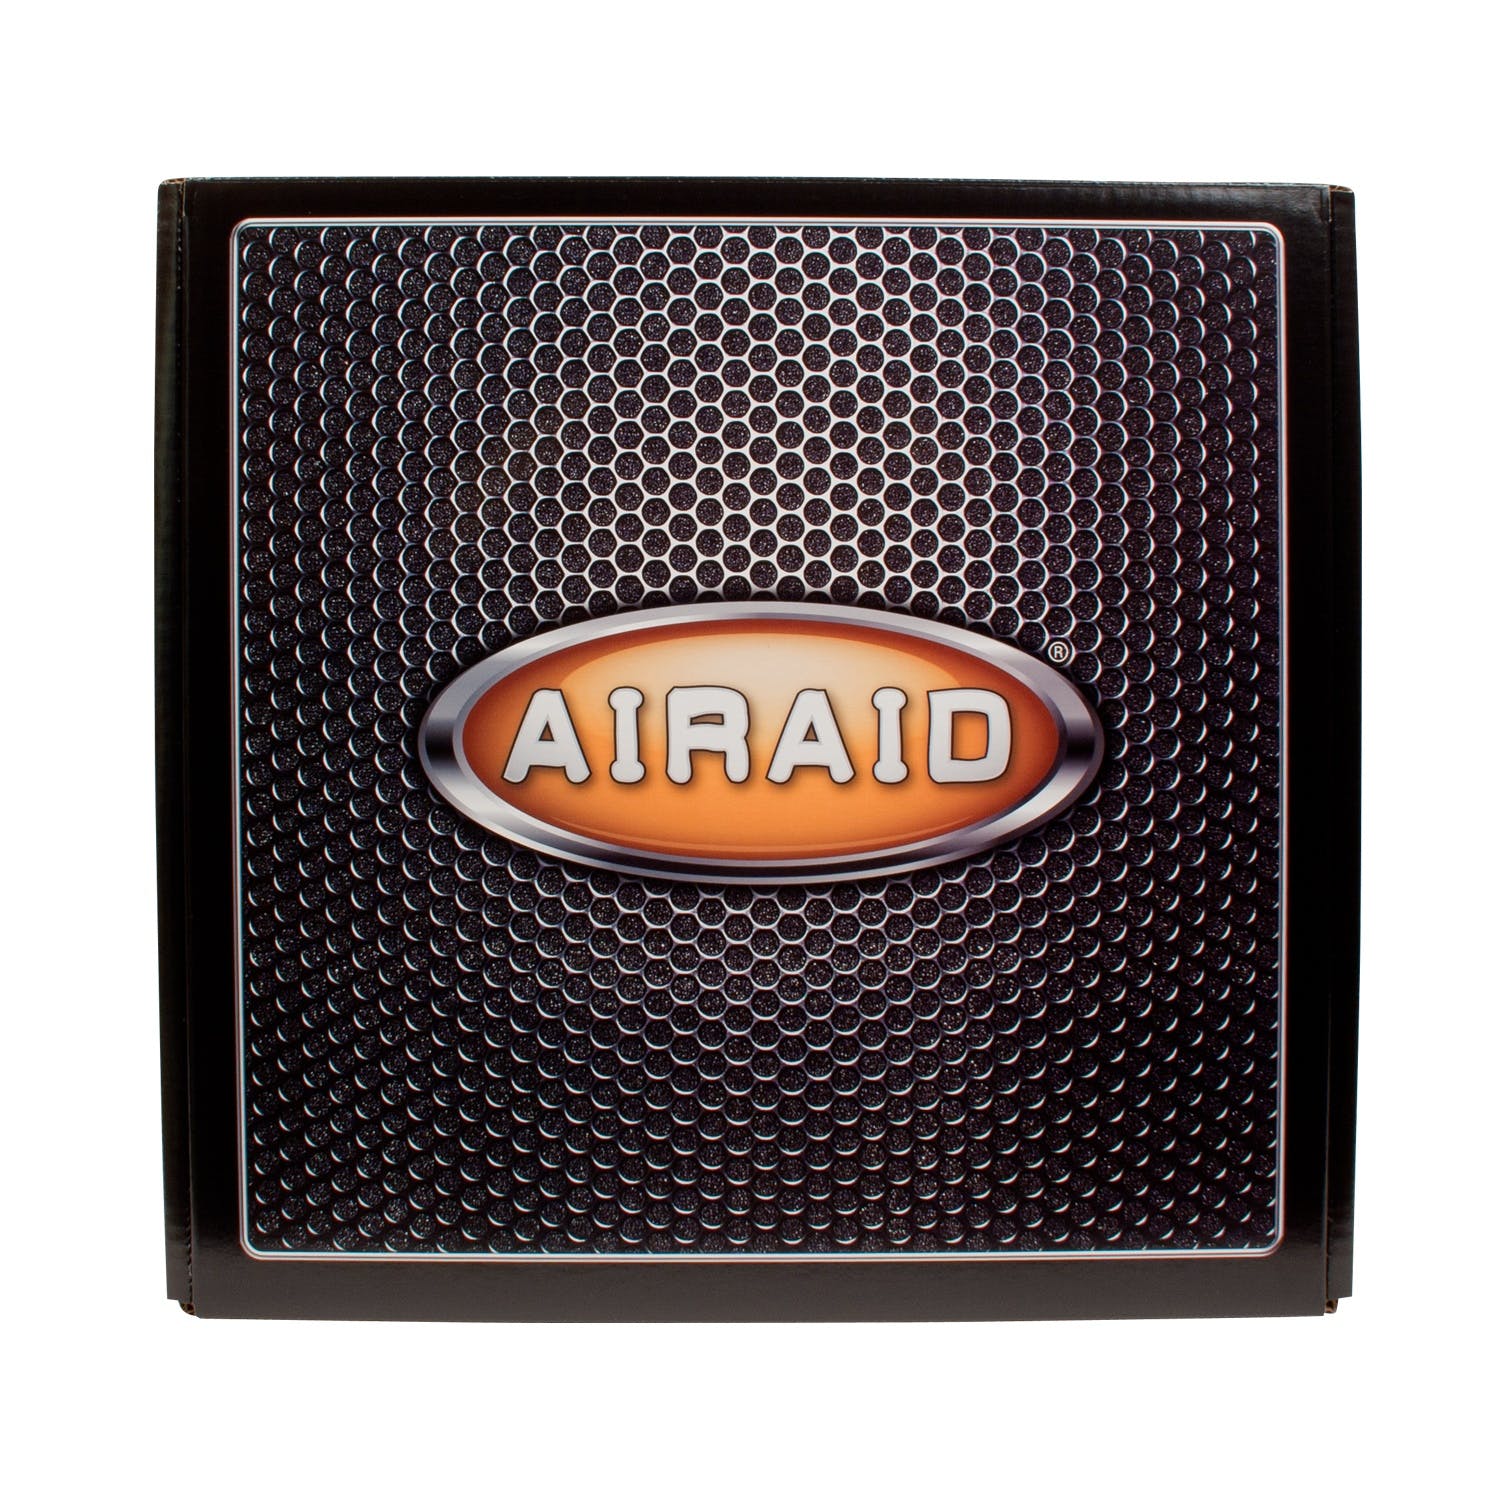 AIRAID 200-187 Performance Air Intake System